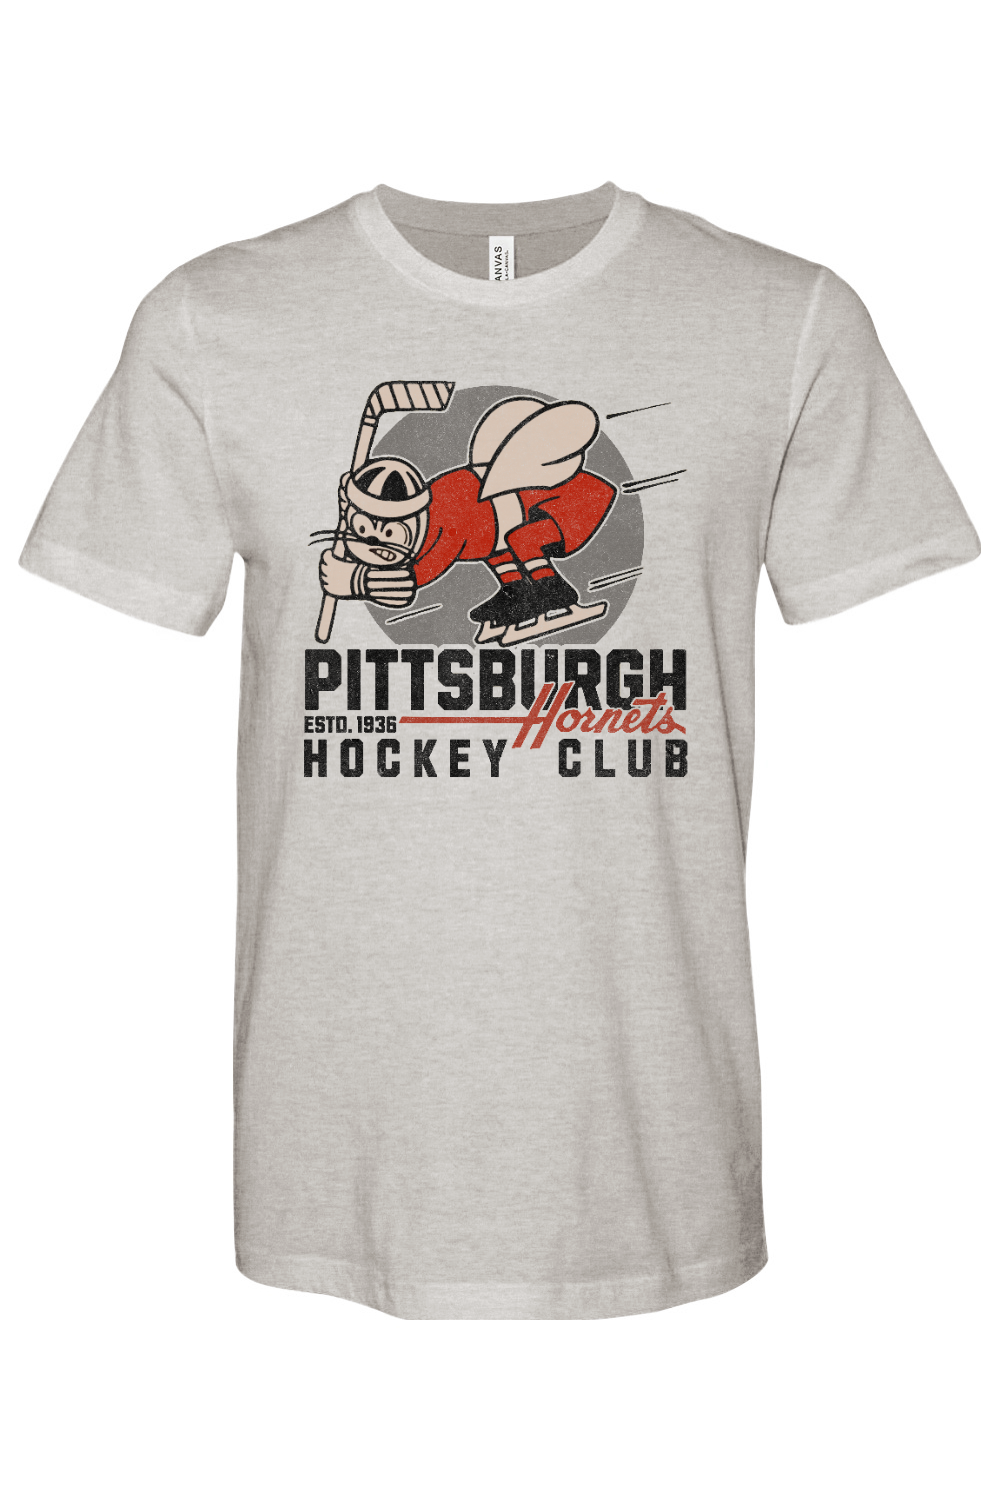 Pittsburgh Hornets Hockey - 1936 - Yinzylvania